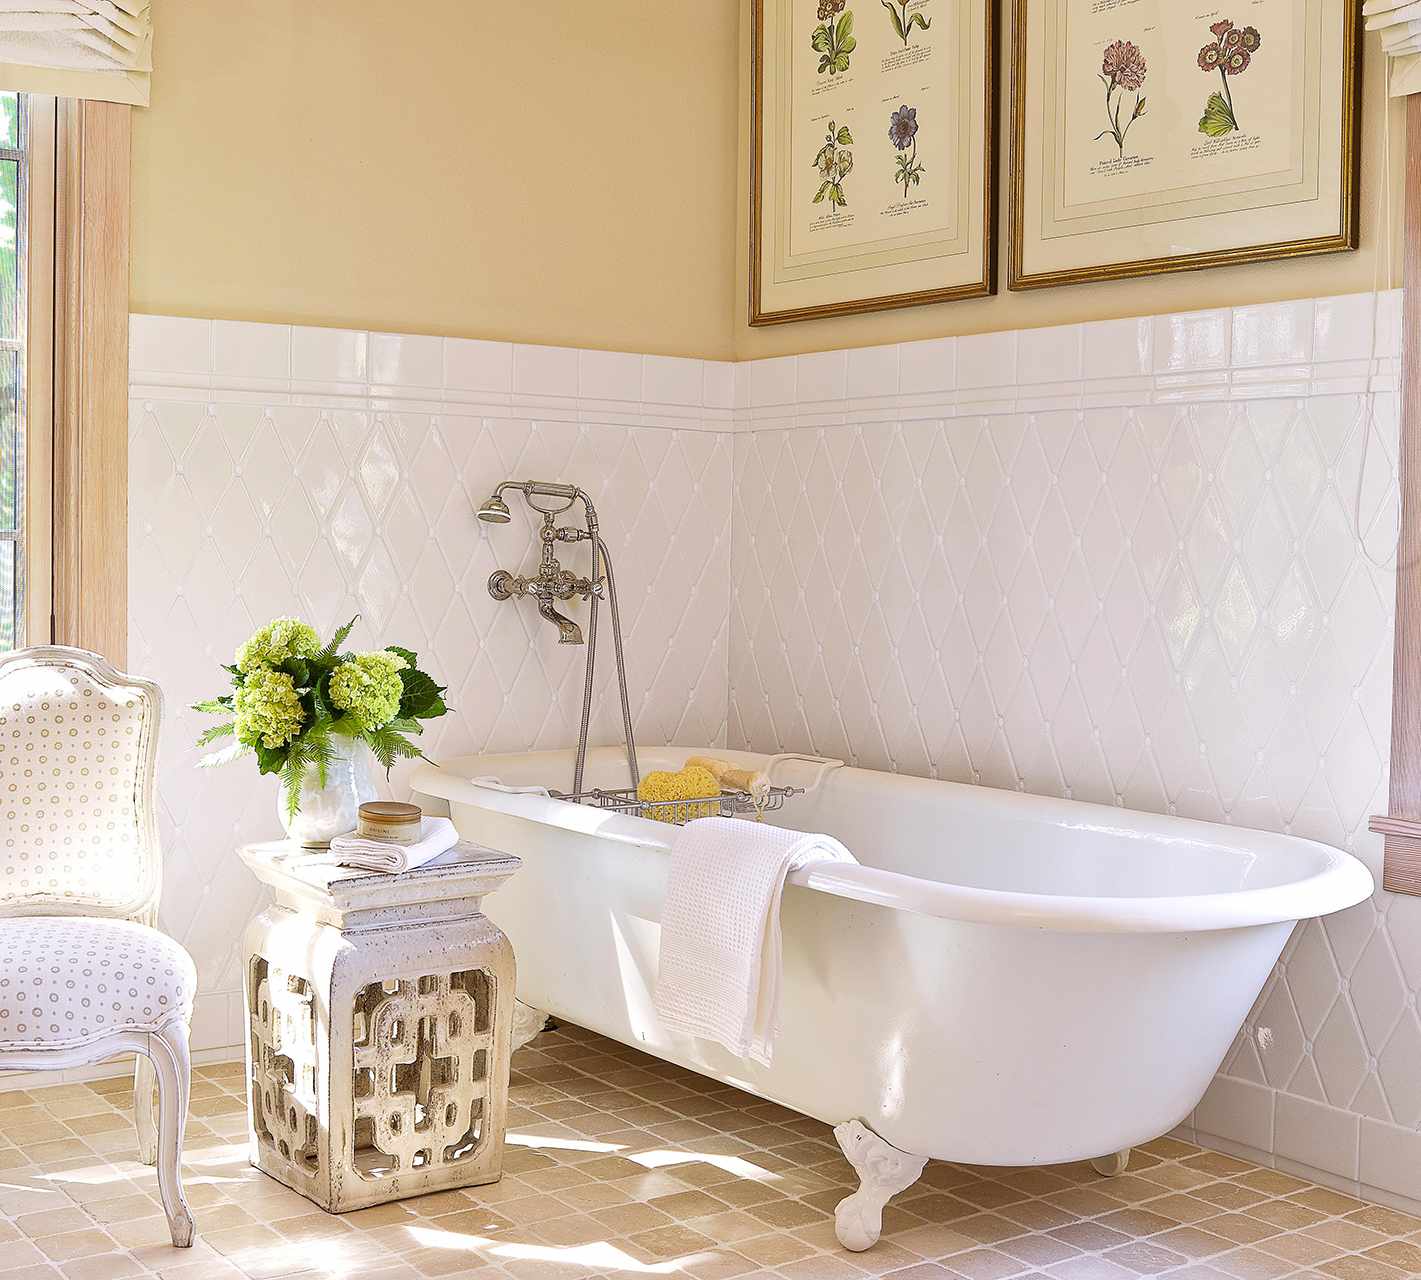 Vintage-Inspired White Bathroom